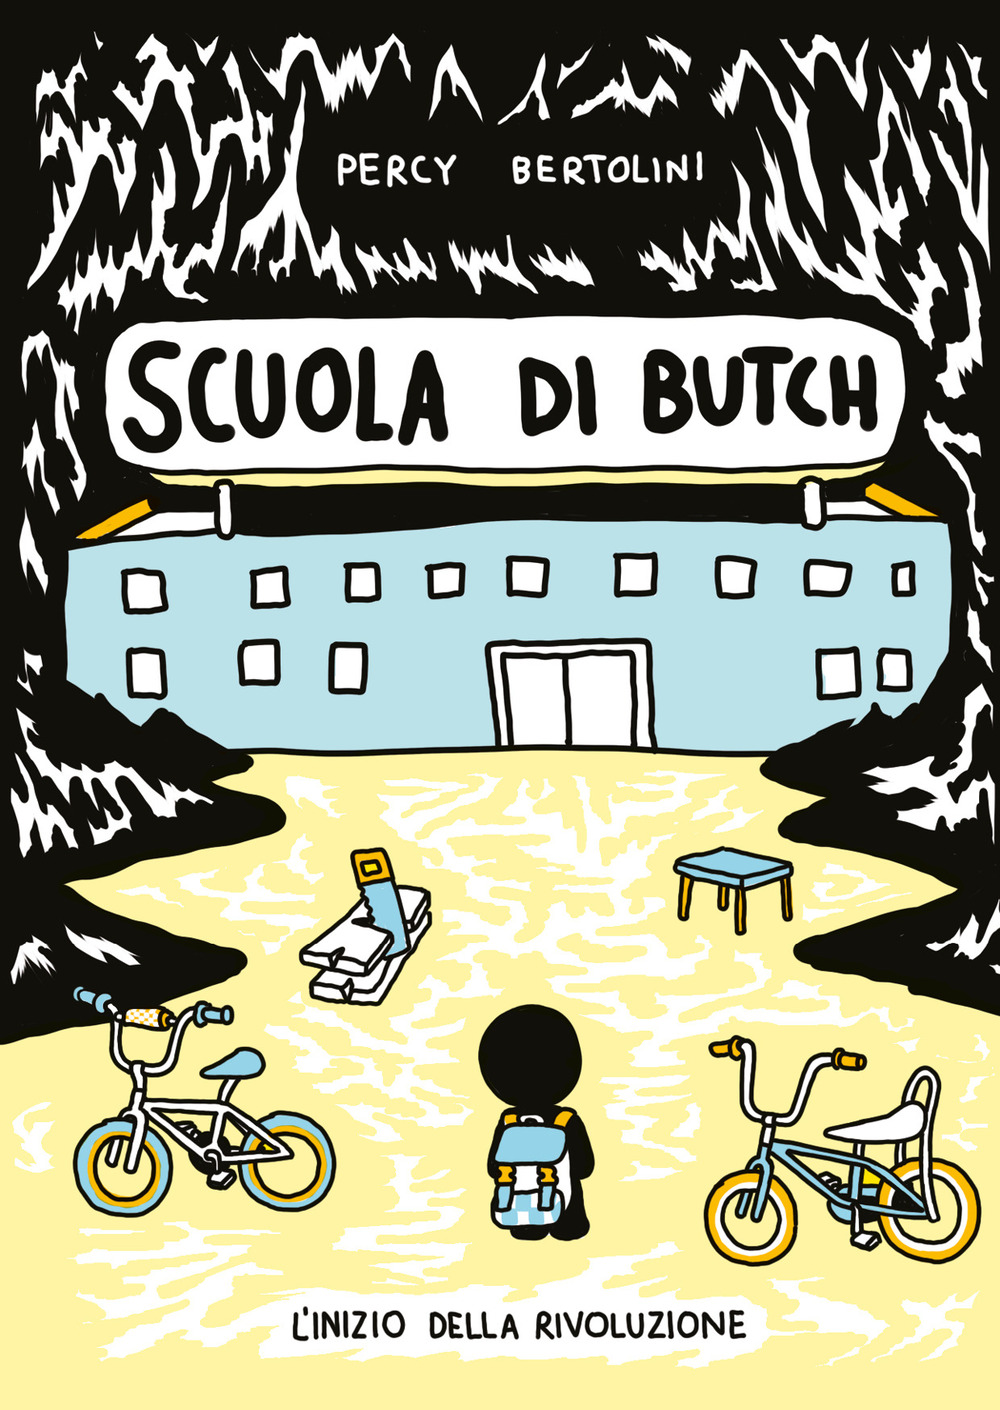 Scuola di Butch vol. 1 (Italiano language, Eris)